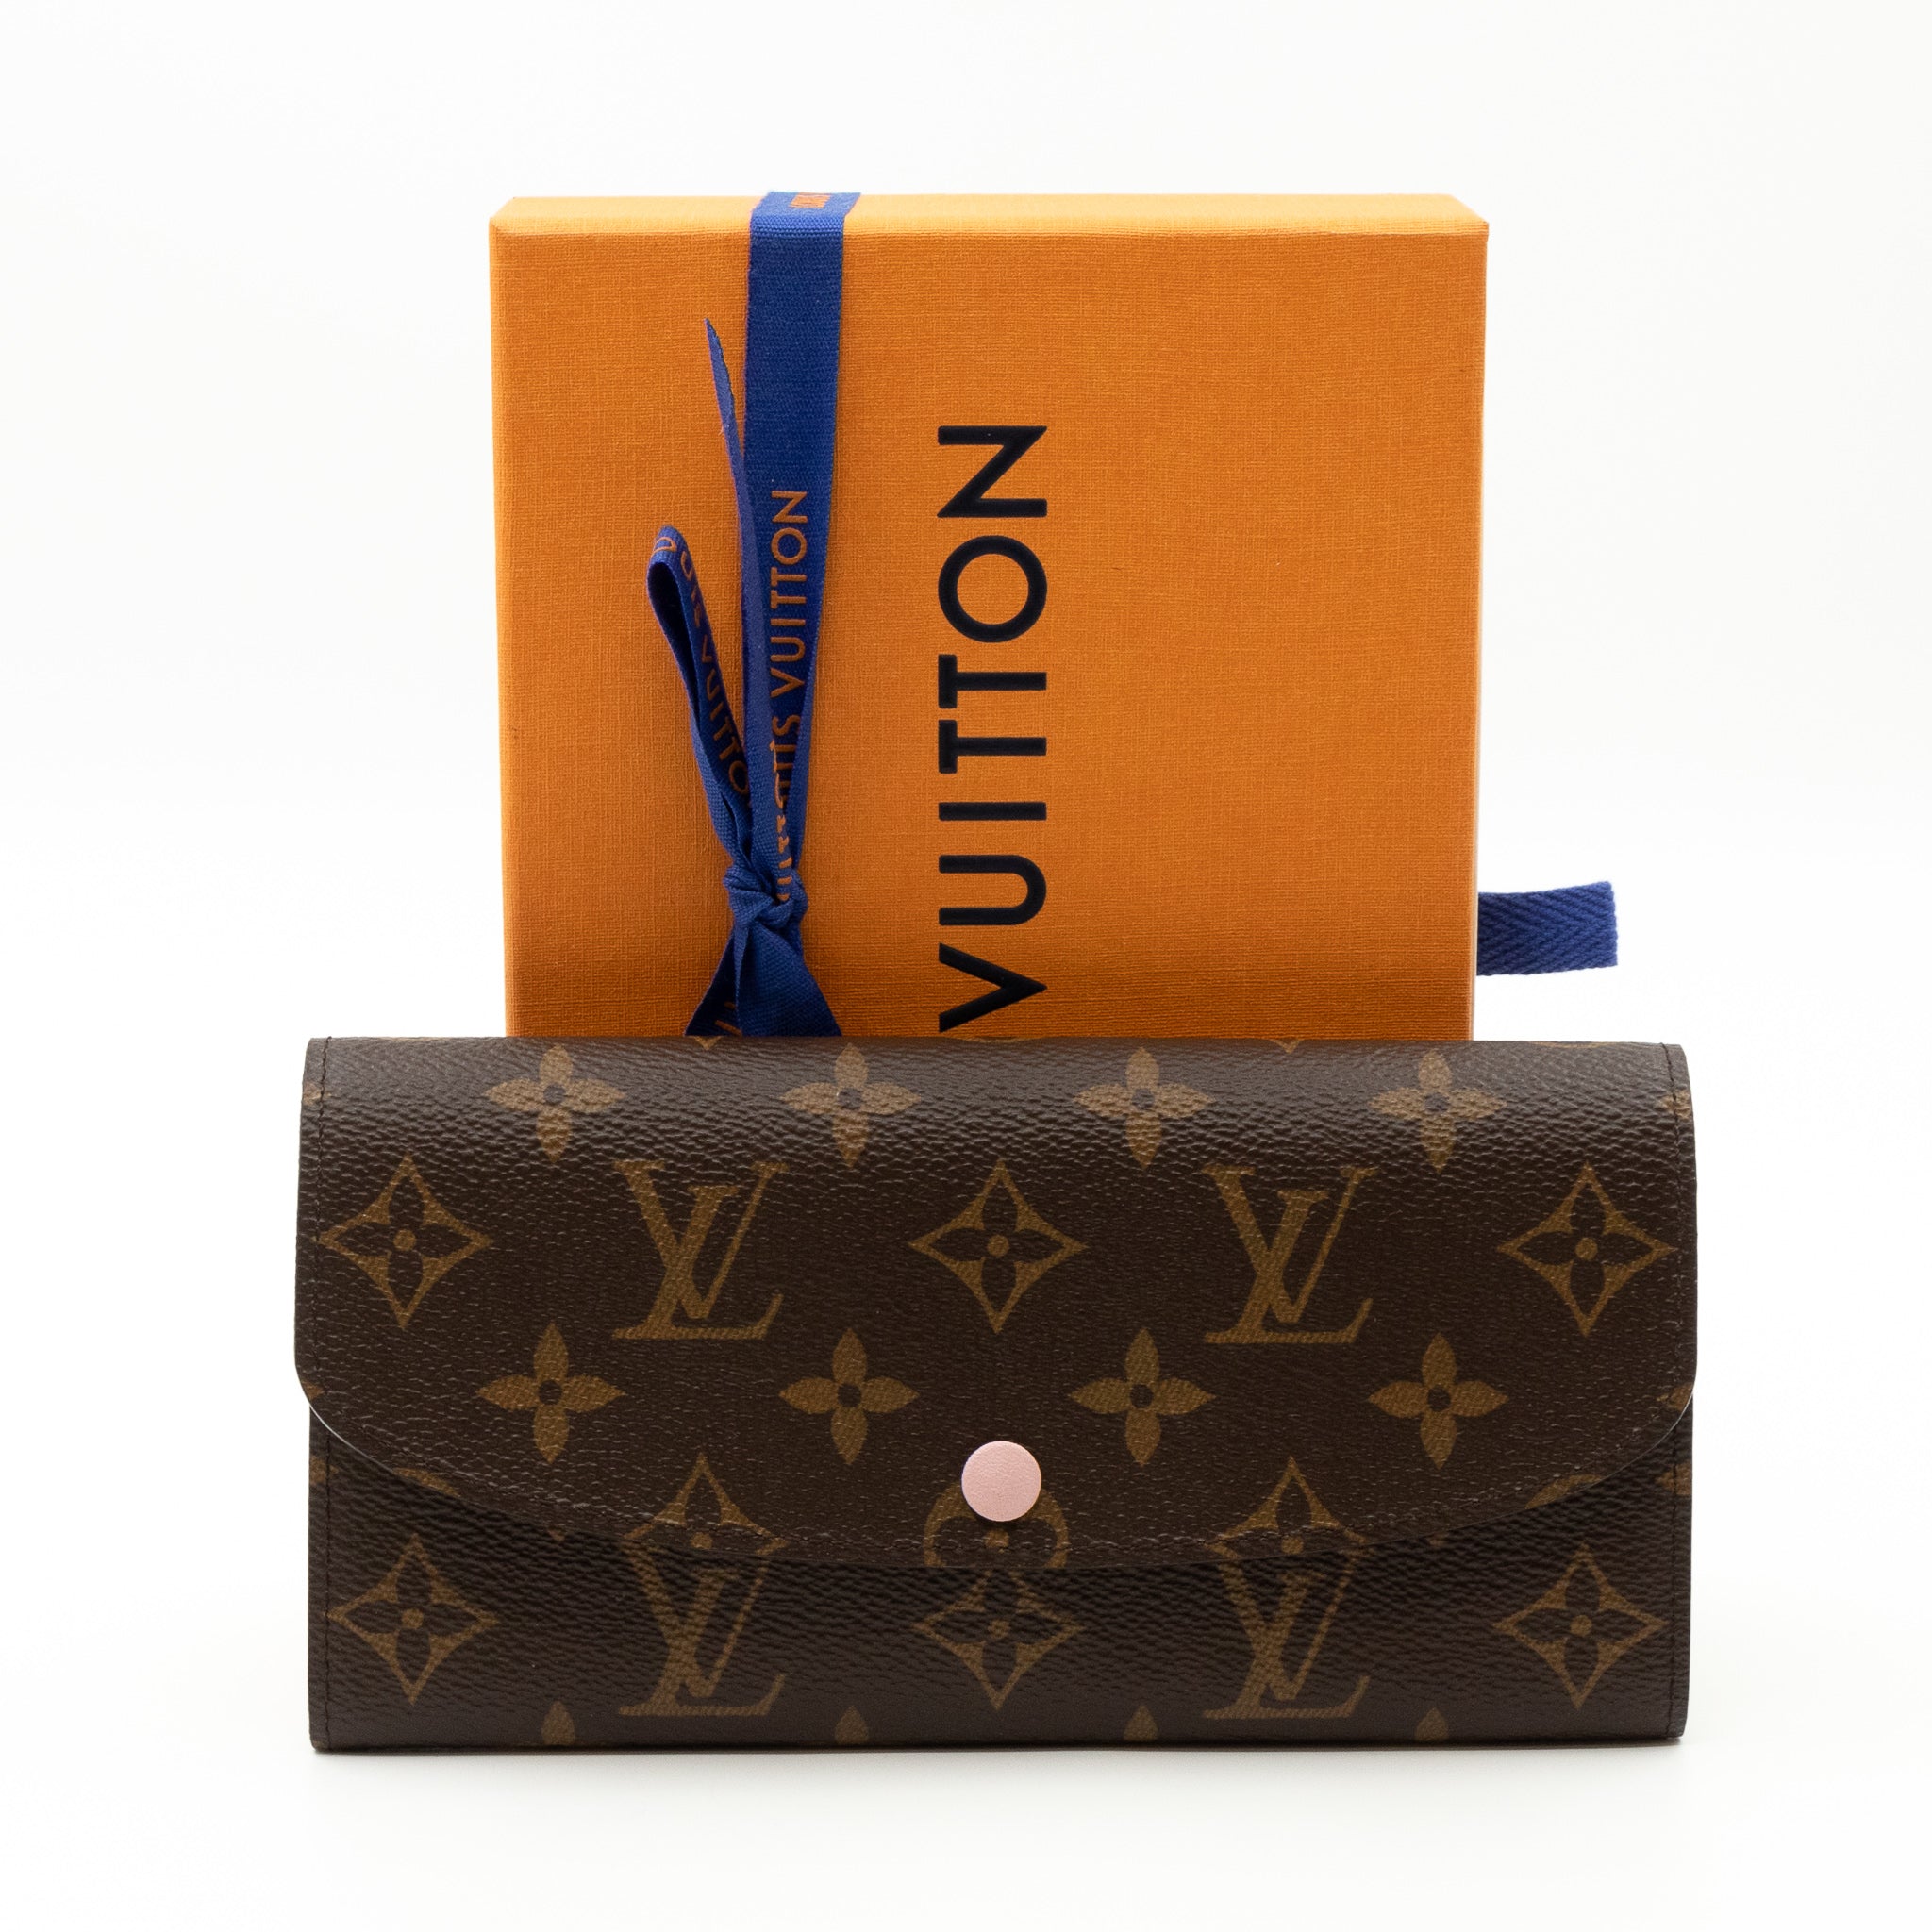 Louis Vuitton (LV)  Emilie Wallet * Damier Ebene* Unboxing